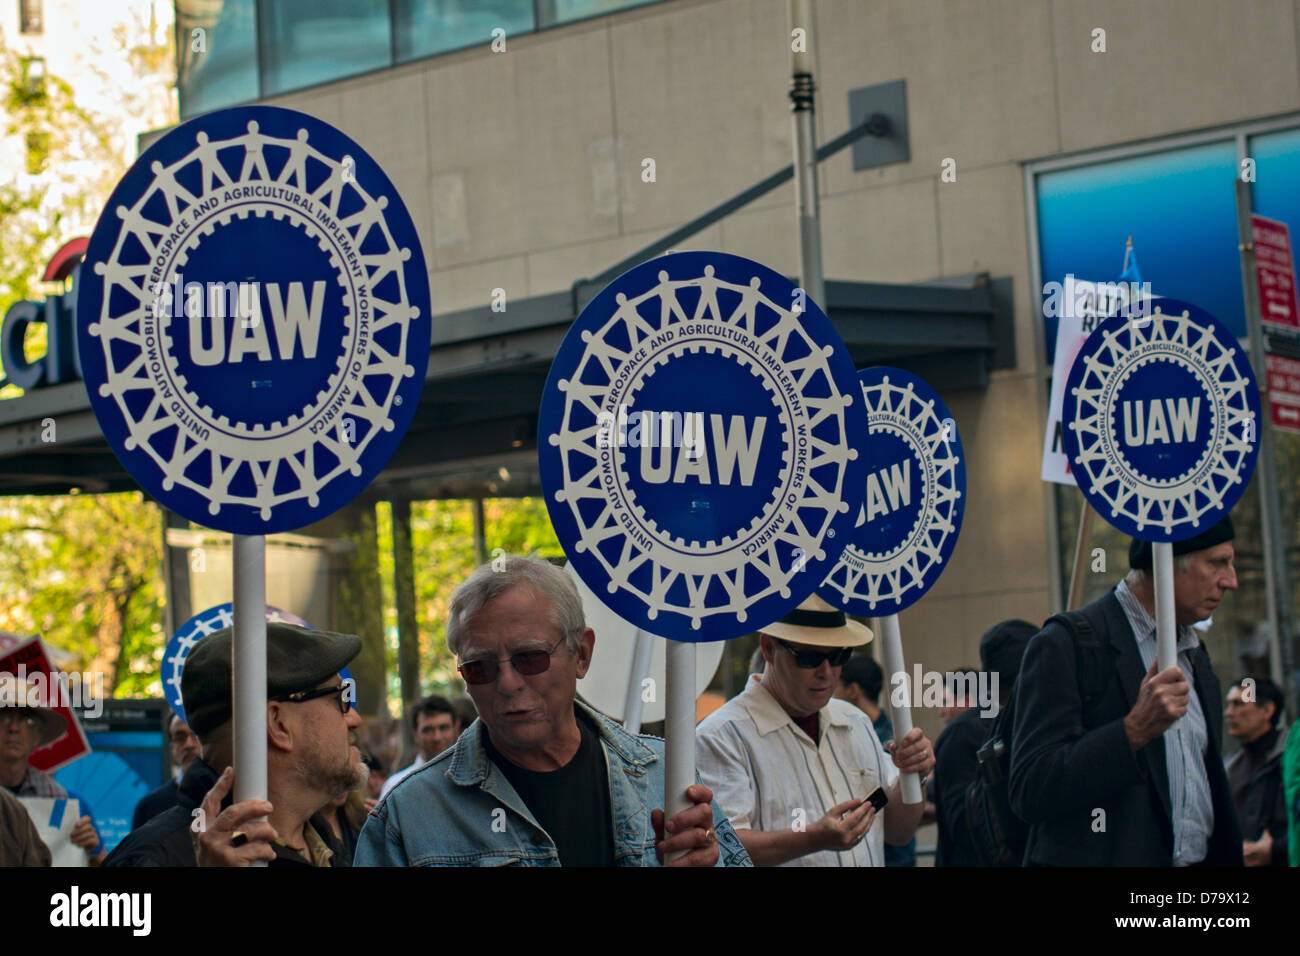 Mercredi, Mai 1, 2013, New York, NY, US : les droits des travailleurs manifestants, y compris les membres de l'United Auto Workers, mars sur Broadway vers l'hôtel de ville après un rassemblement à New York's Union Square pour marquer la Journée internationale du Travail, également connu sous le nom de jour de mai. Banque D'Images